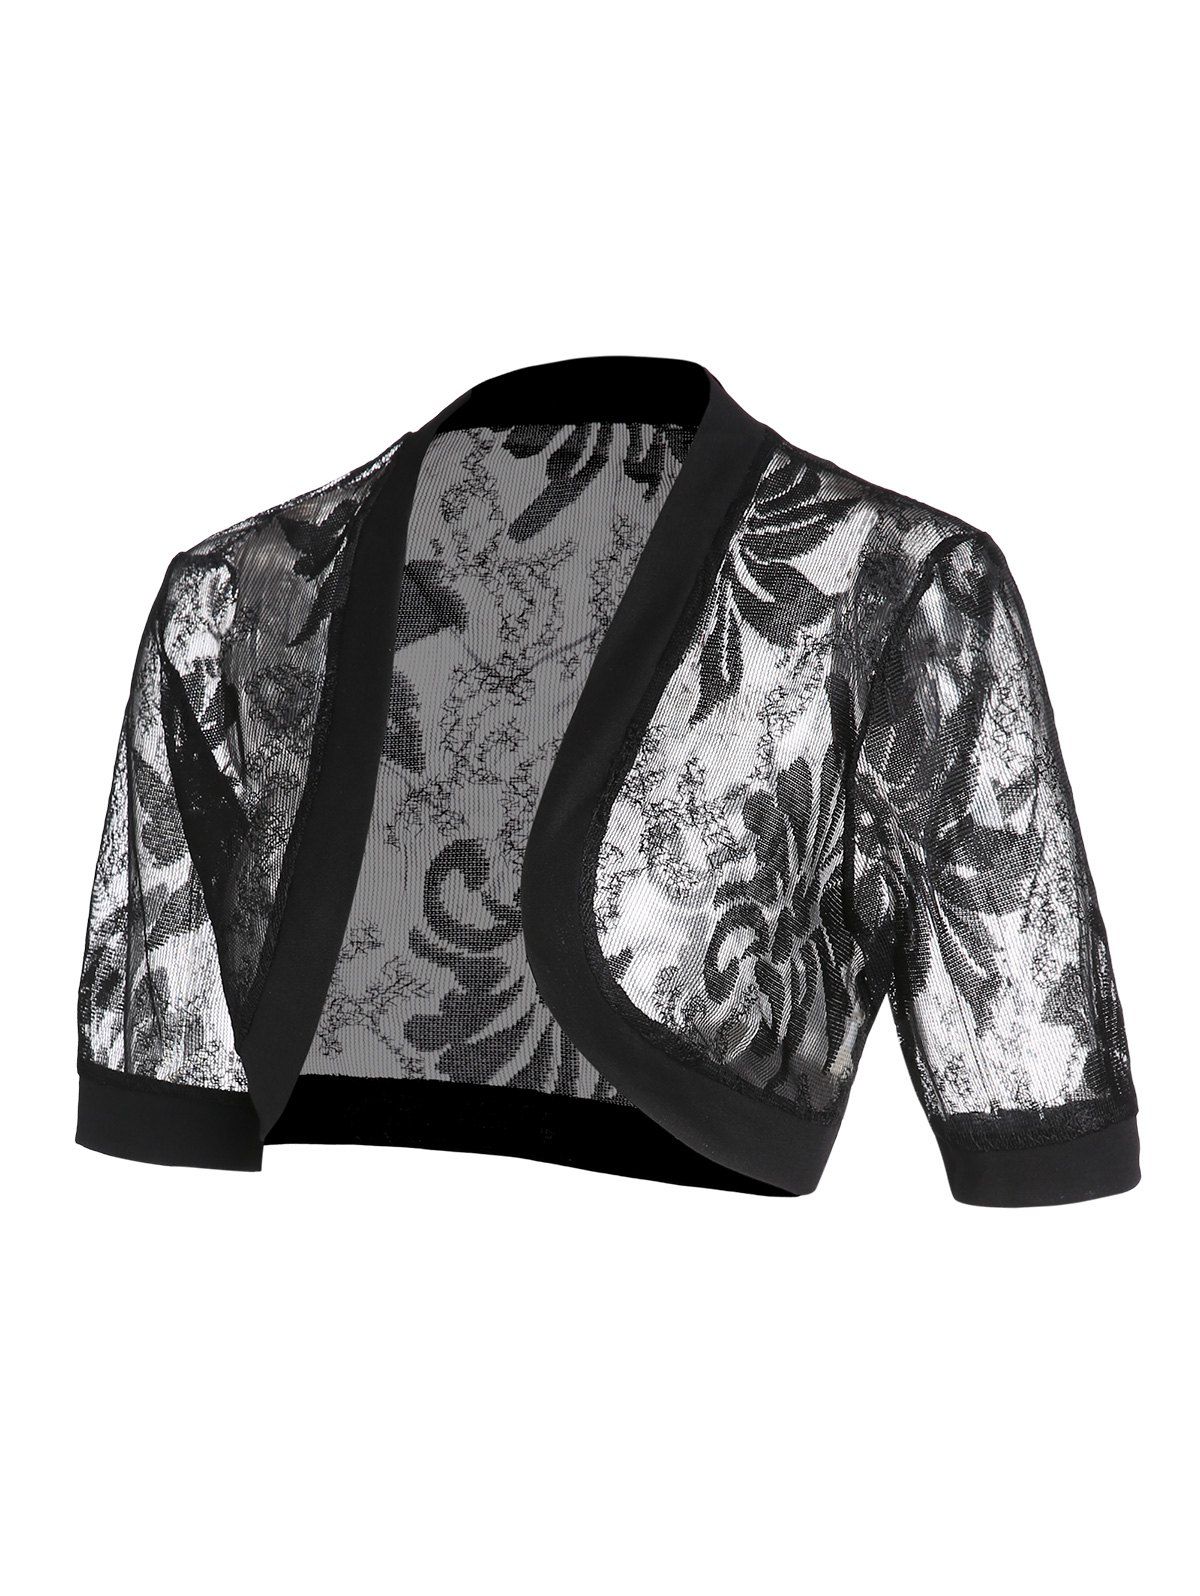 T-shirt d'Eté Kimono Court Floral en Dentelle Transparente à Manches 1 / 2 - Noir XXL